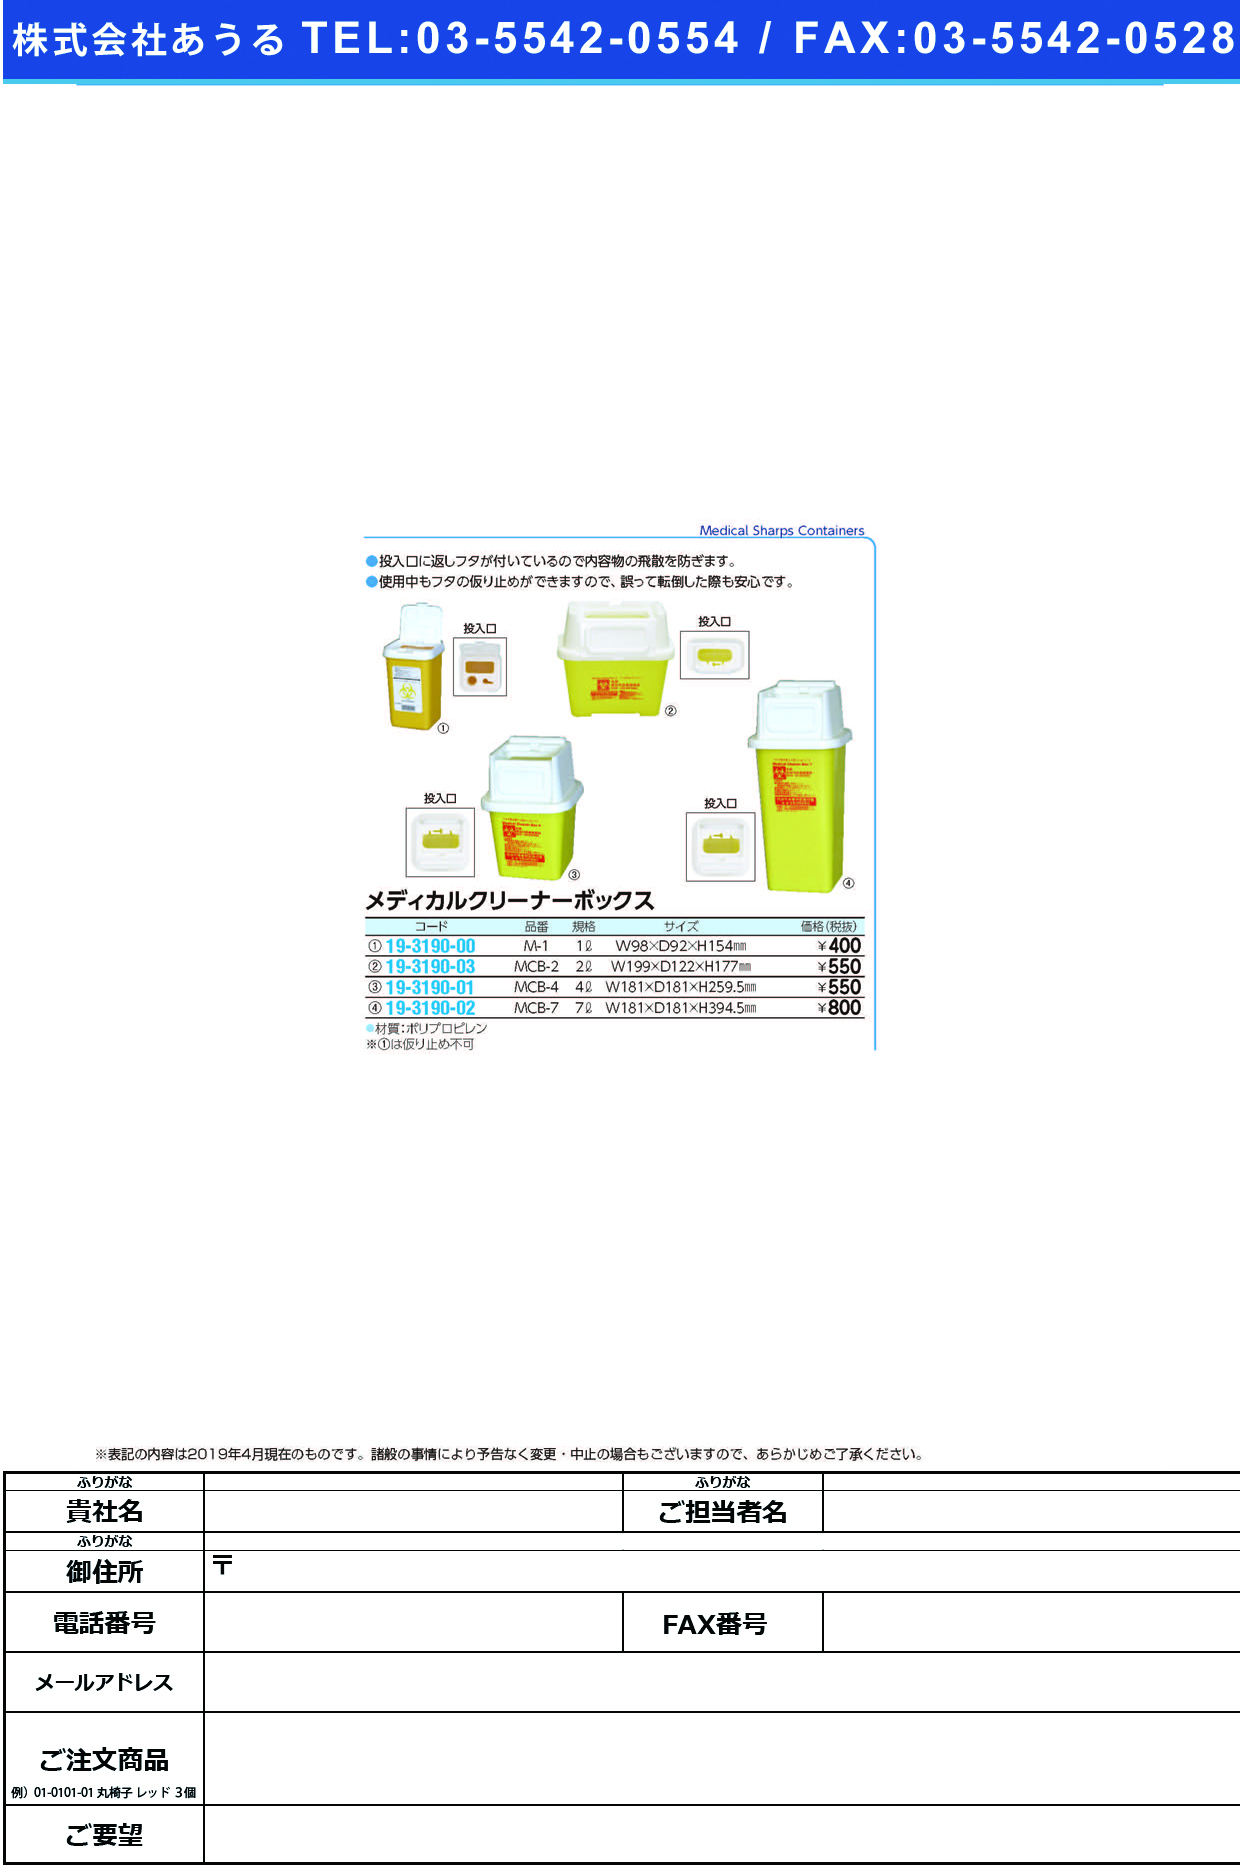 (19-3190-01)メディカルクリーナーボックス MCB-4(4L) ﾒﾃﾞｨｶﾙｸﾘｰﾅｰﾎﾞｯｸｽ【1個単位】【2019年カタログ商品】